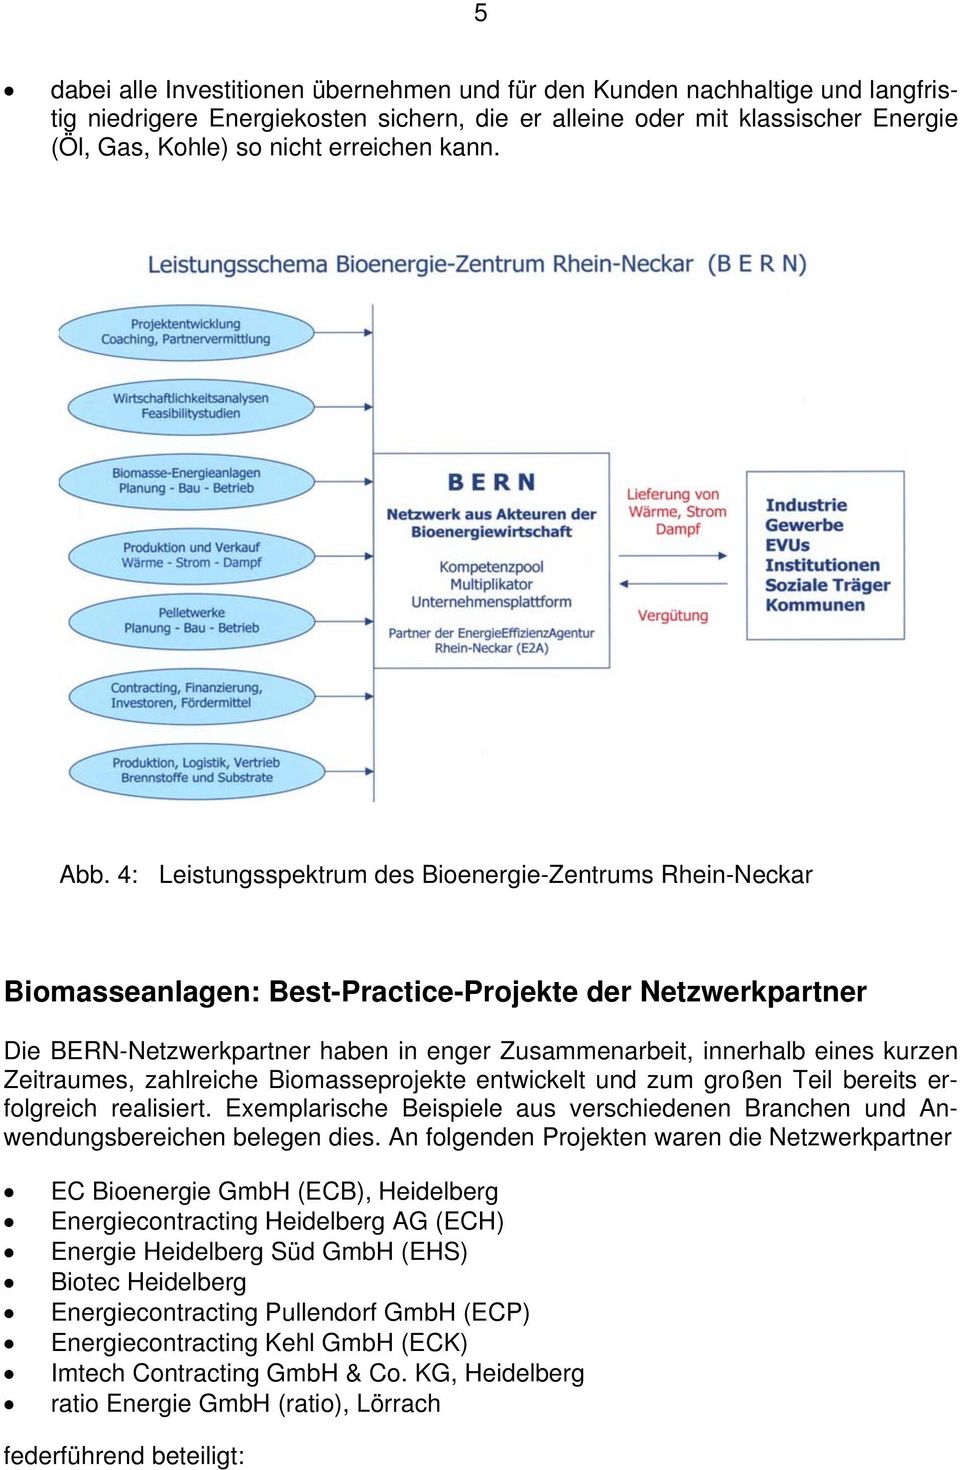 4: Leistungsspektrum des Bioenergie-Zentrums Rhein-Neckar Biomasseanlagen: Best-Practice-Projekte der Netzwerkpartner Die BERN-Netzwerkpartner haben in enger Zusammenarbeit, innerhalb eines kurzen